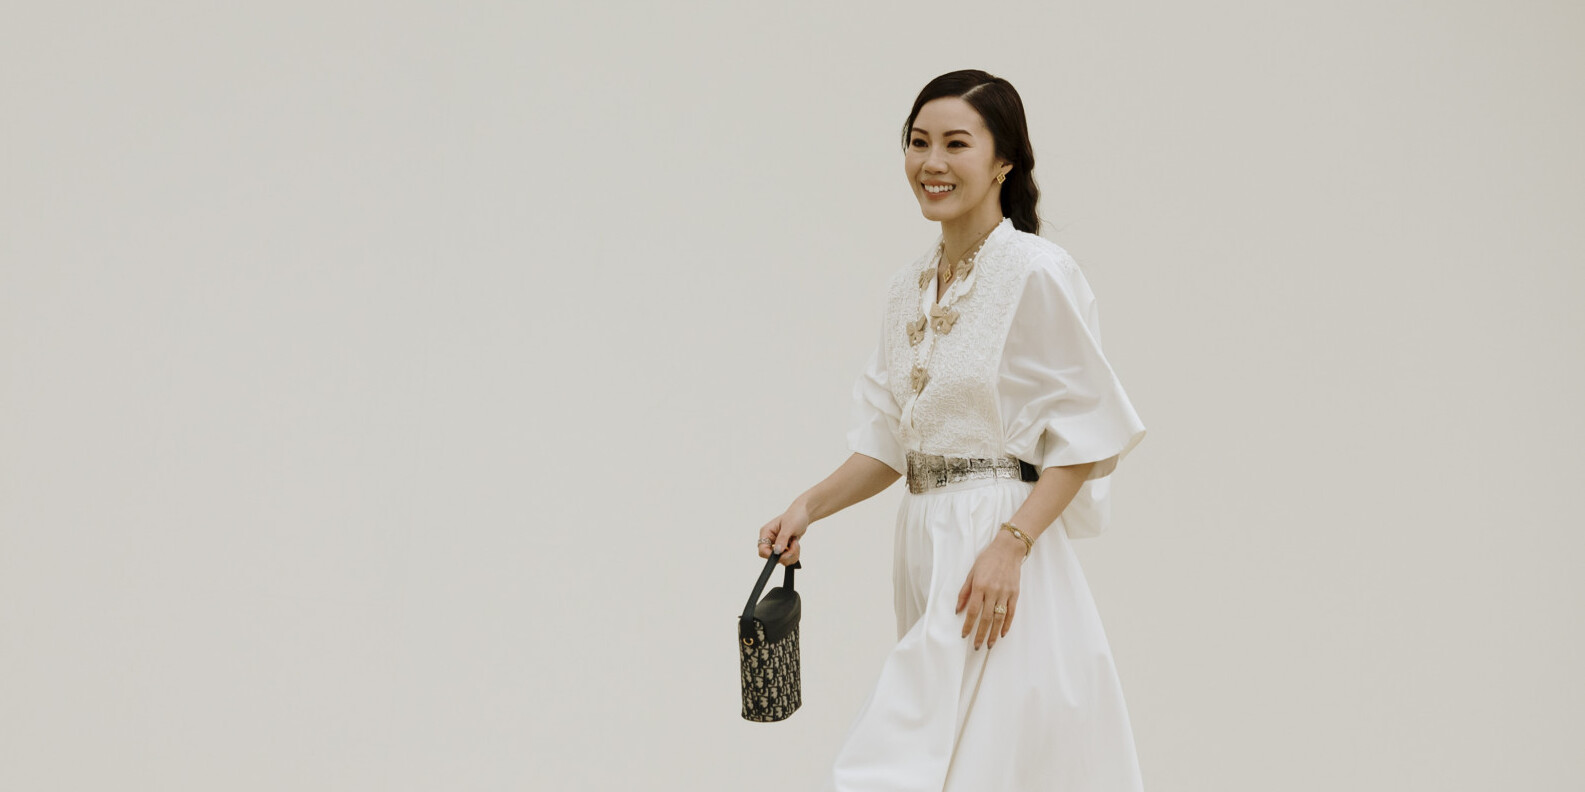 Белое платье-рубашка — идеальный выбор для неформального образа